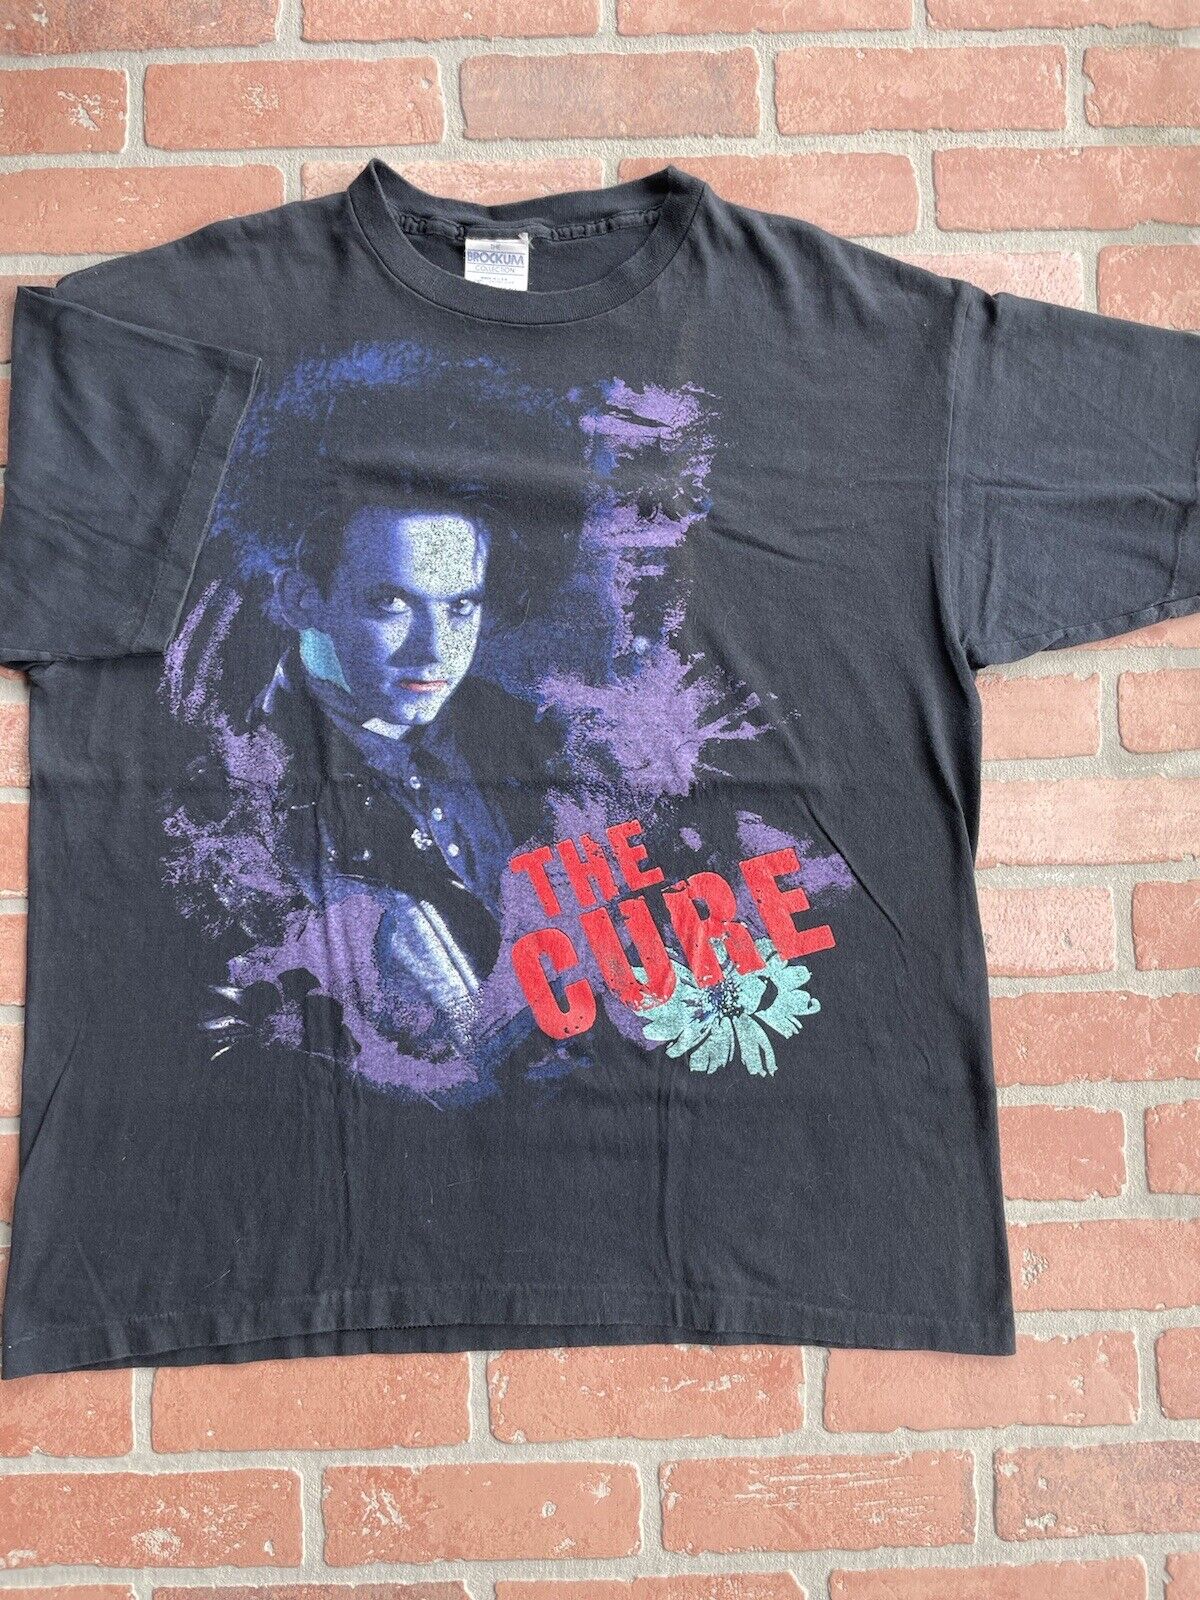 THE CURE 1989 Prayer Tour Vintage 100% Authentic DISINTEGRATION Shirt Large-XL